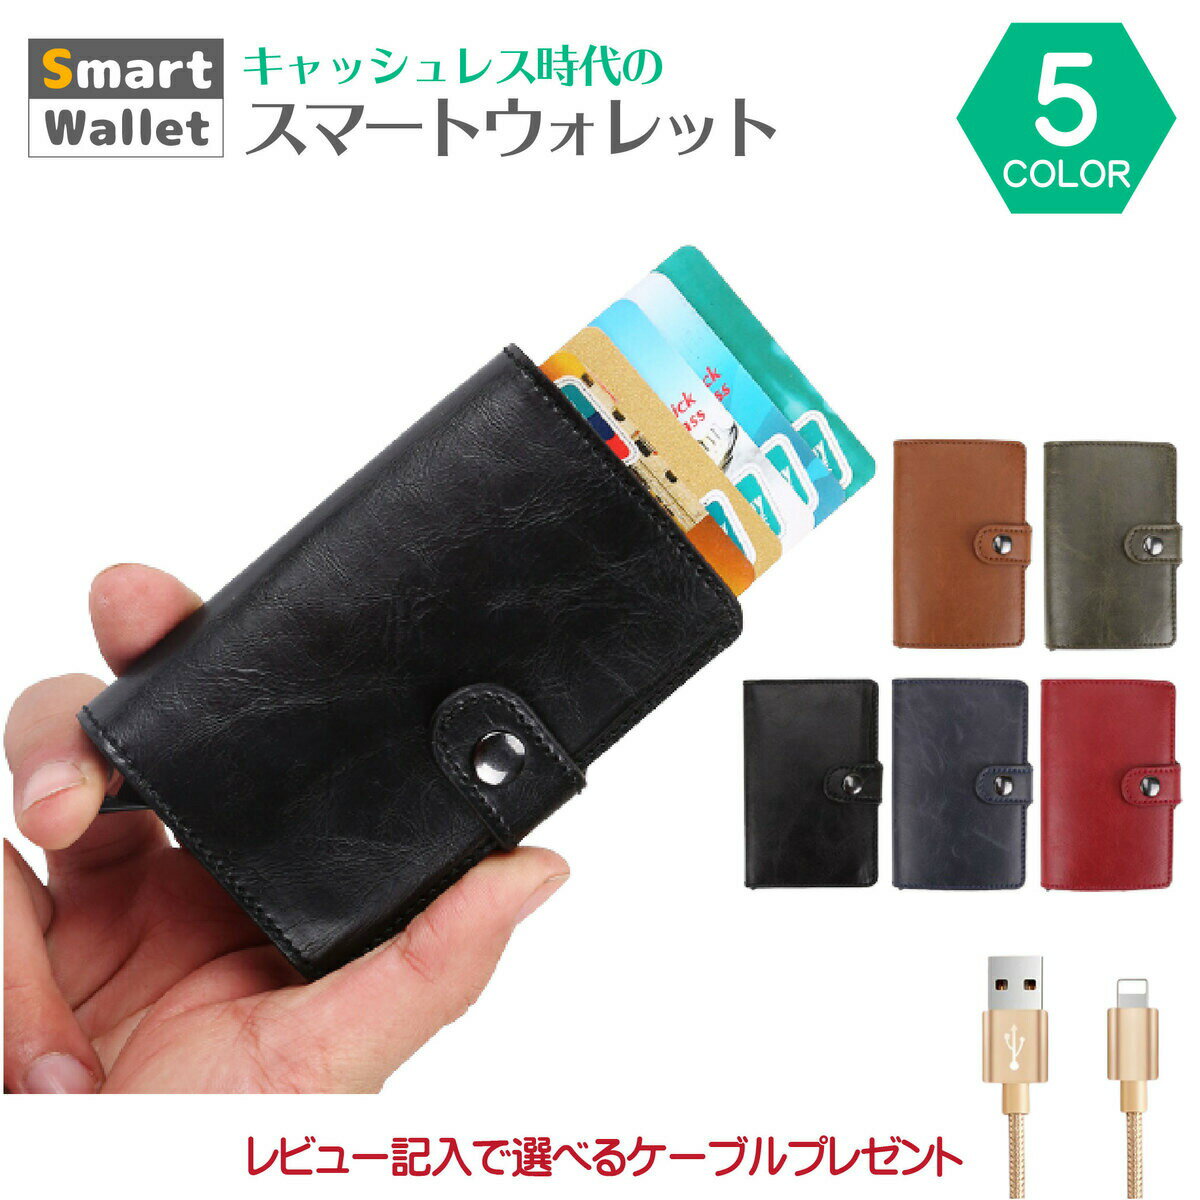 財布 スライド スライド式財布 レザー調 スキミング防止 カードケース サイドボタン付 キャッシュレス クレジットカードケース 磁気防止 スライド式 スマート ポップアップ 飛び出す ボタン【送料無料】 1